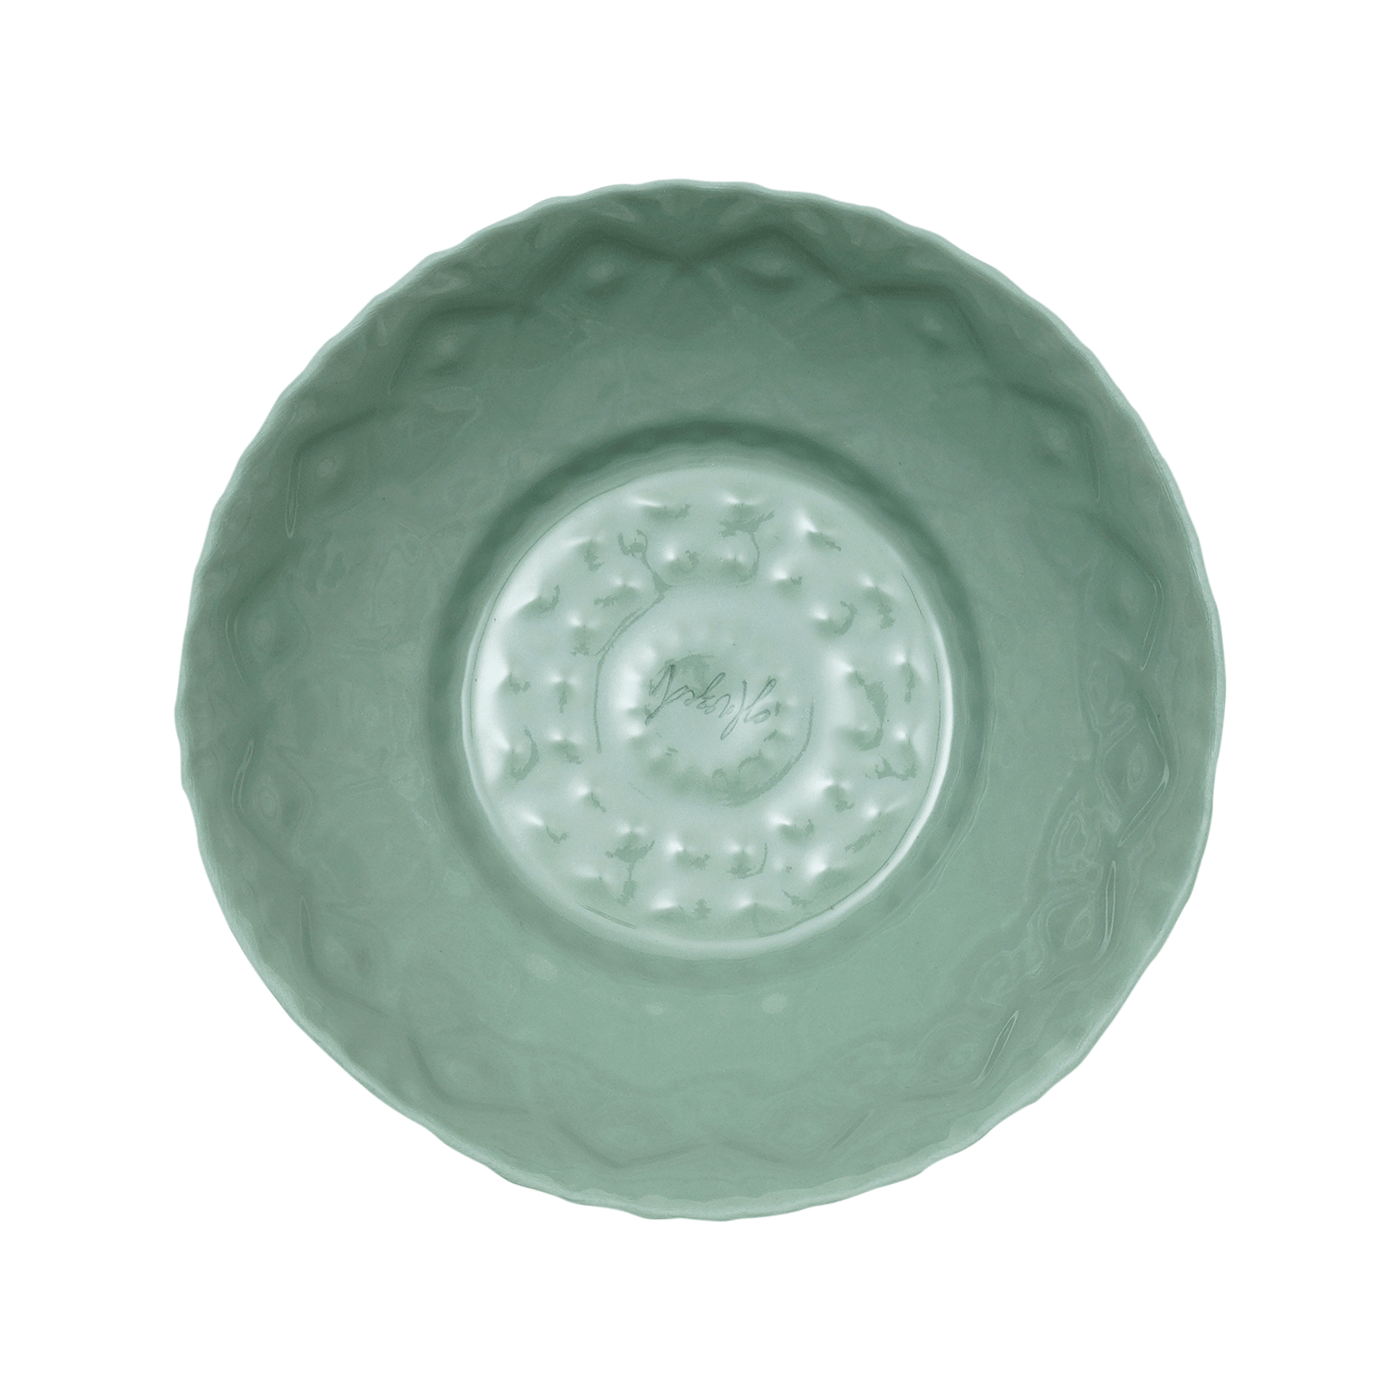 Geo Handmade Bowl, Light Green, 15 cm Bowls sazy.com